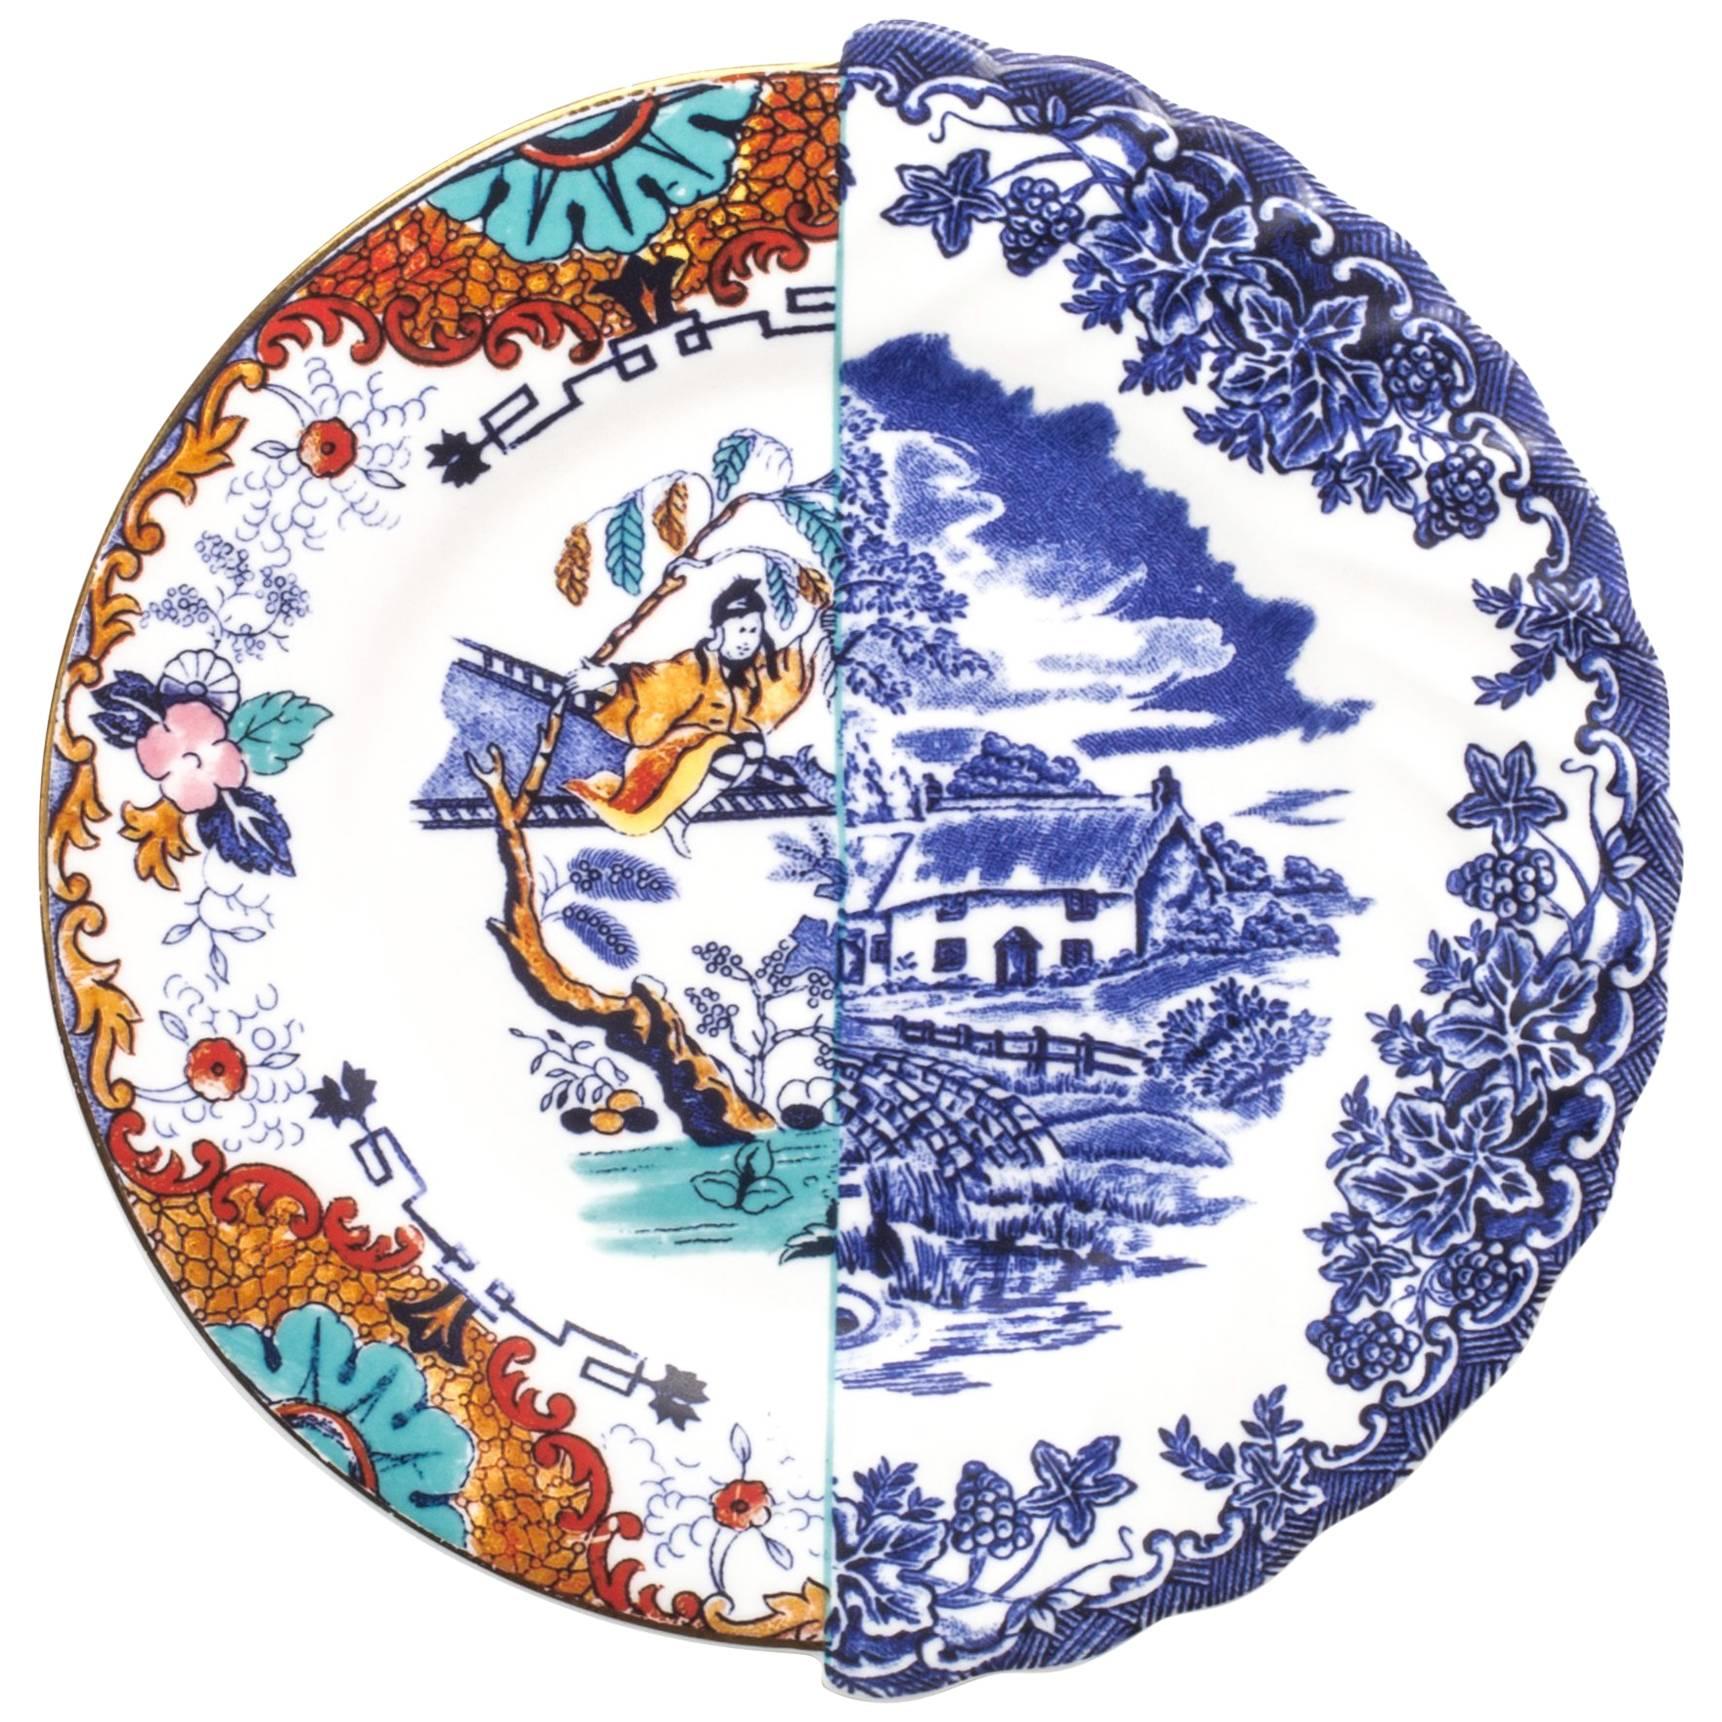 Seletti "Hybrid-Valdrada" Fruit Plate in Porcelain